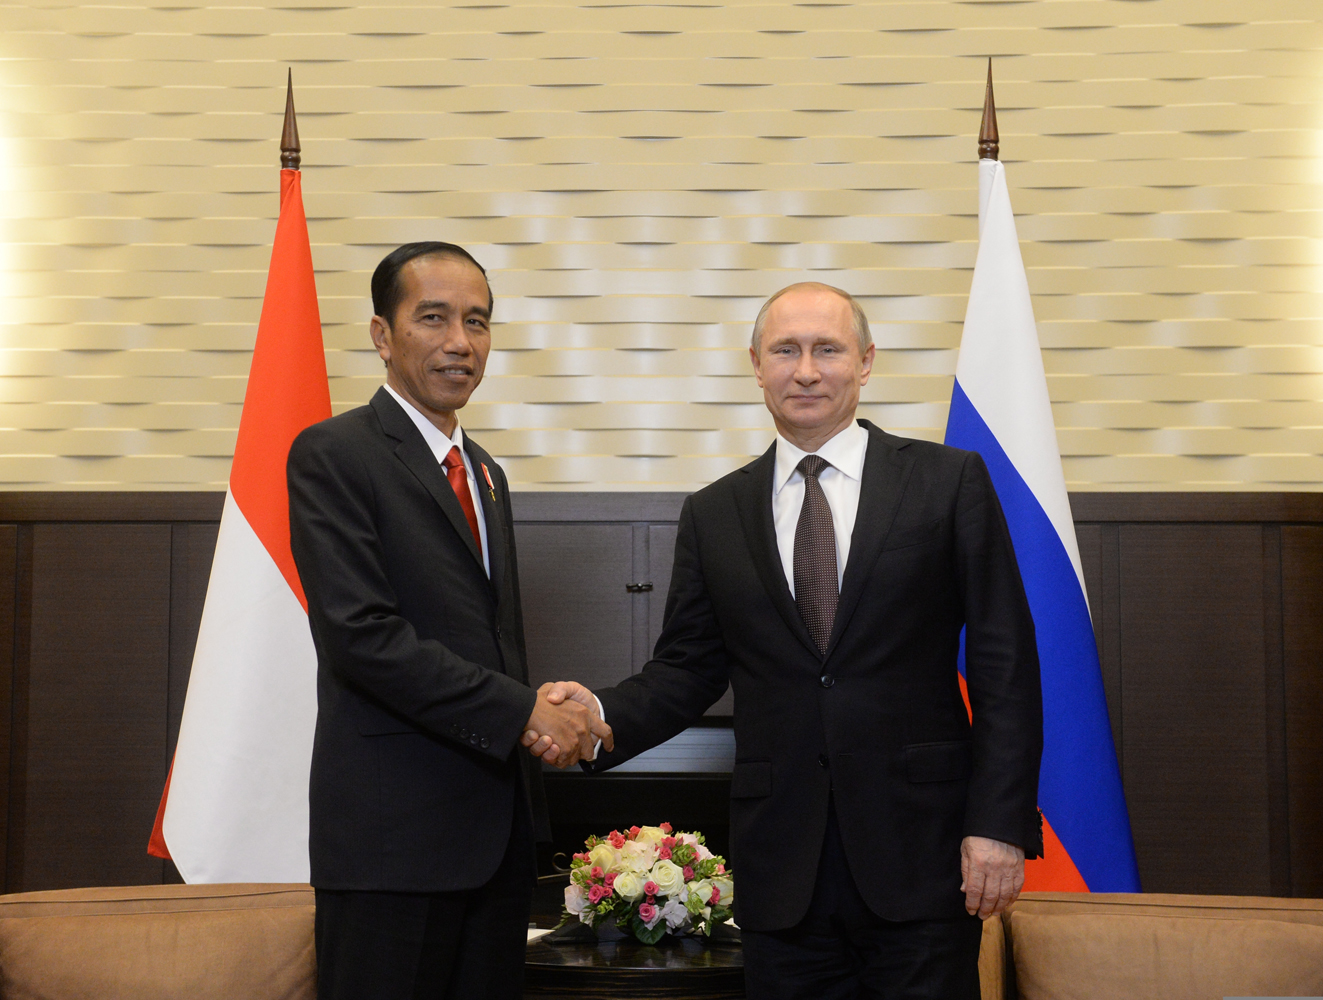 Rusia dan Indonesia telah menandatangani kesepakatan perukaran informasi intelijen dan meningkatkan kontak antarlembaga penegak hukum.